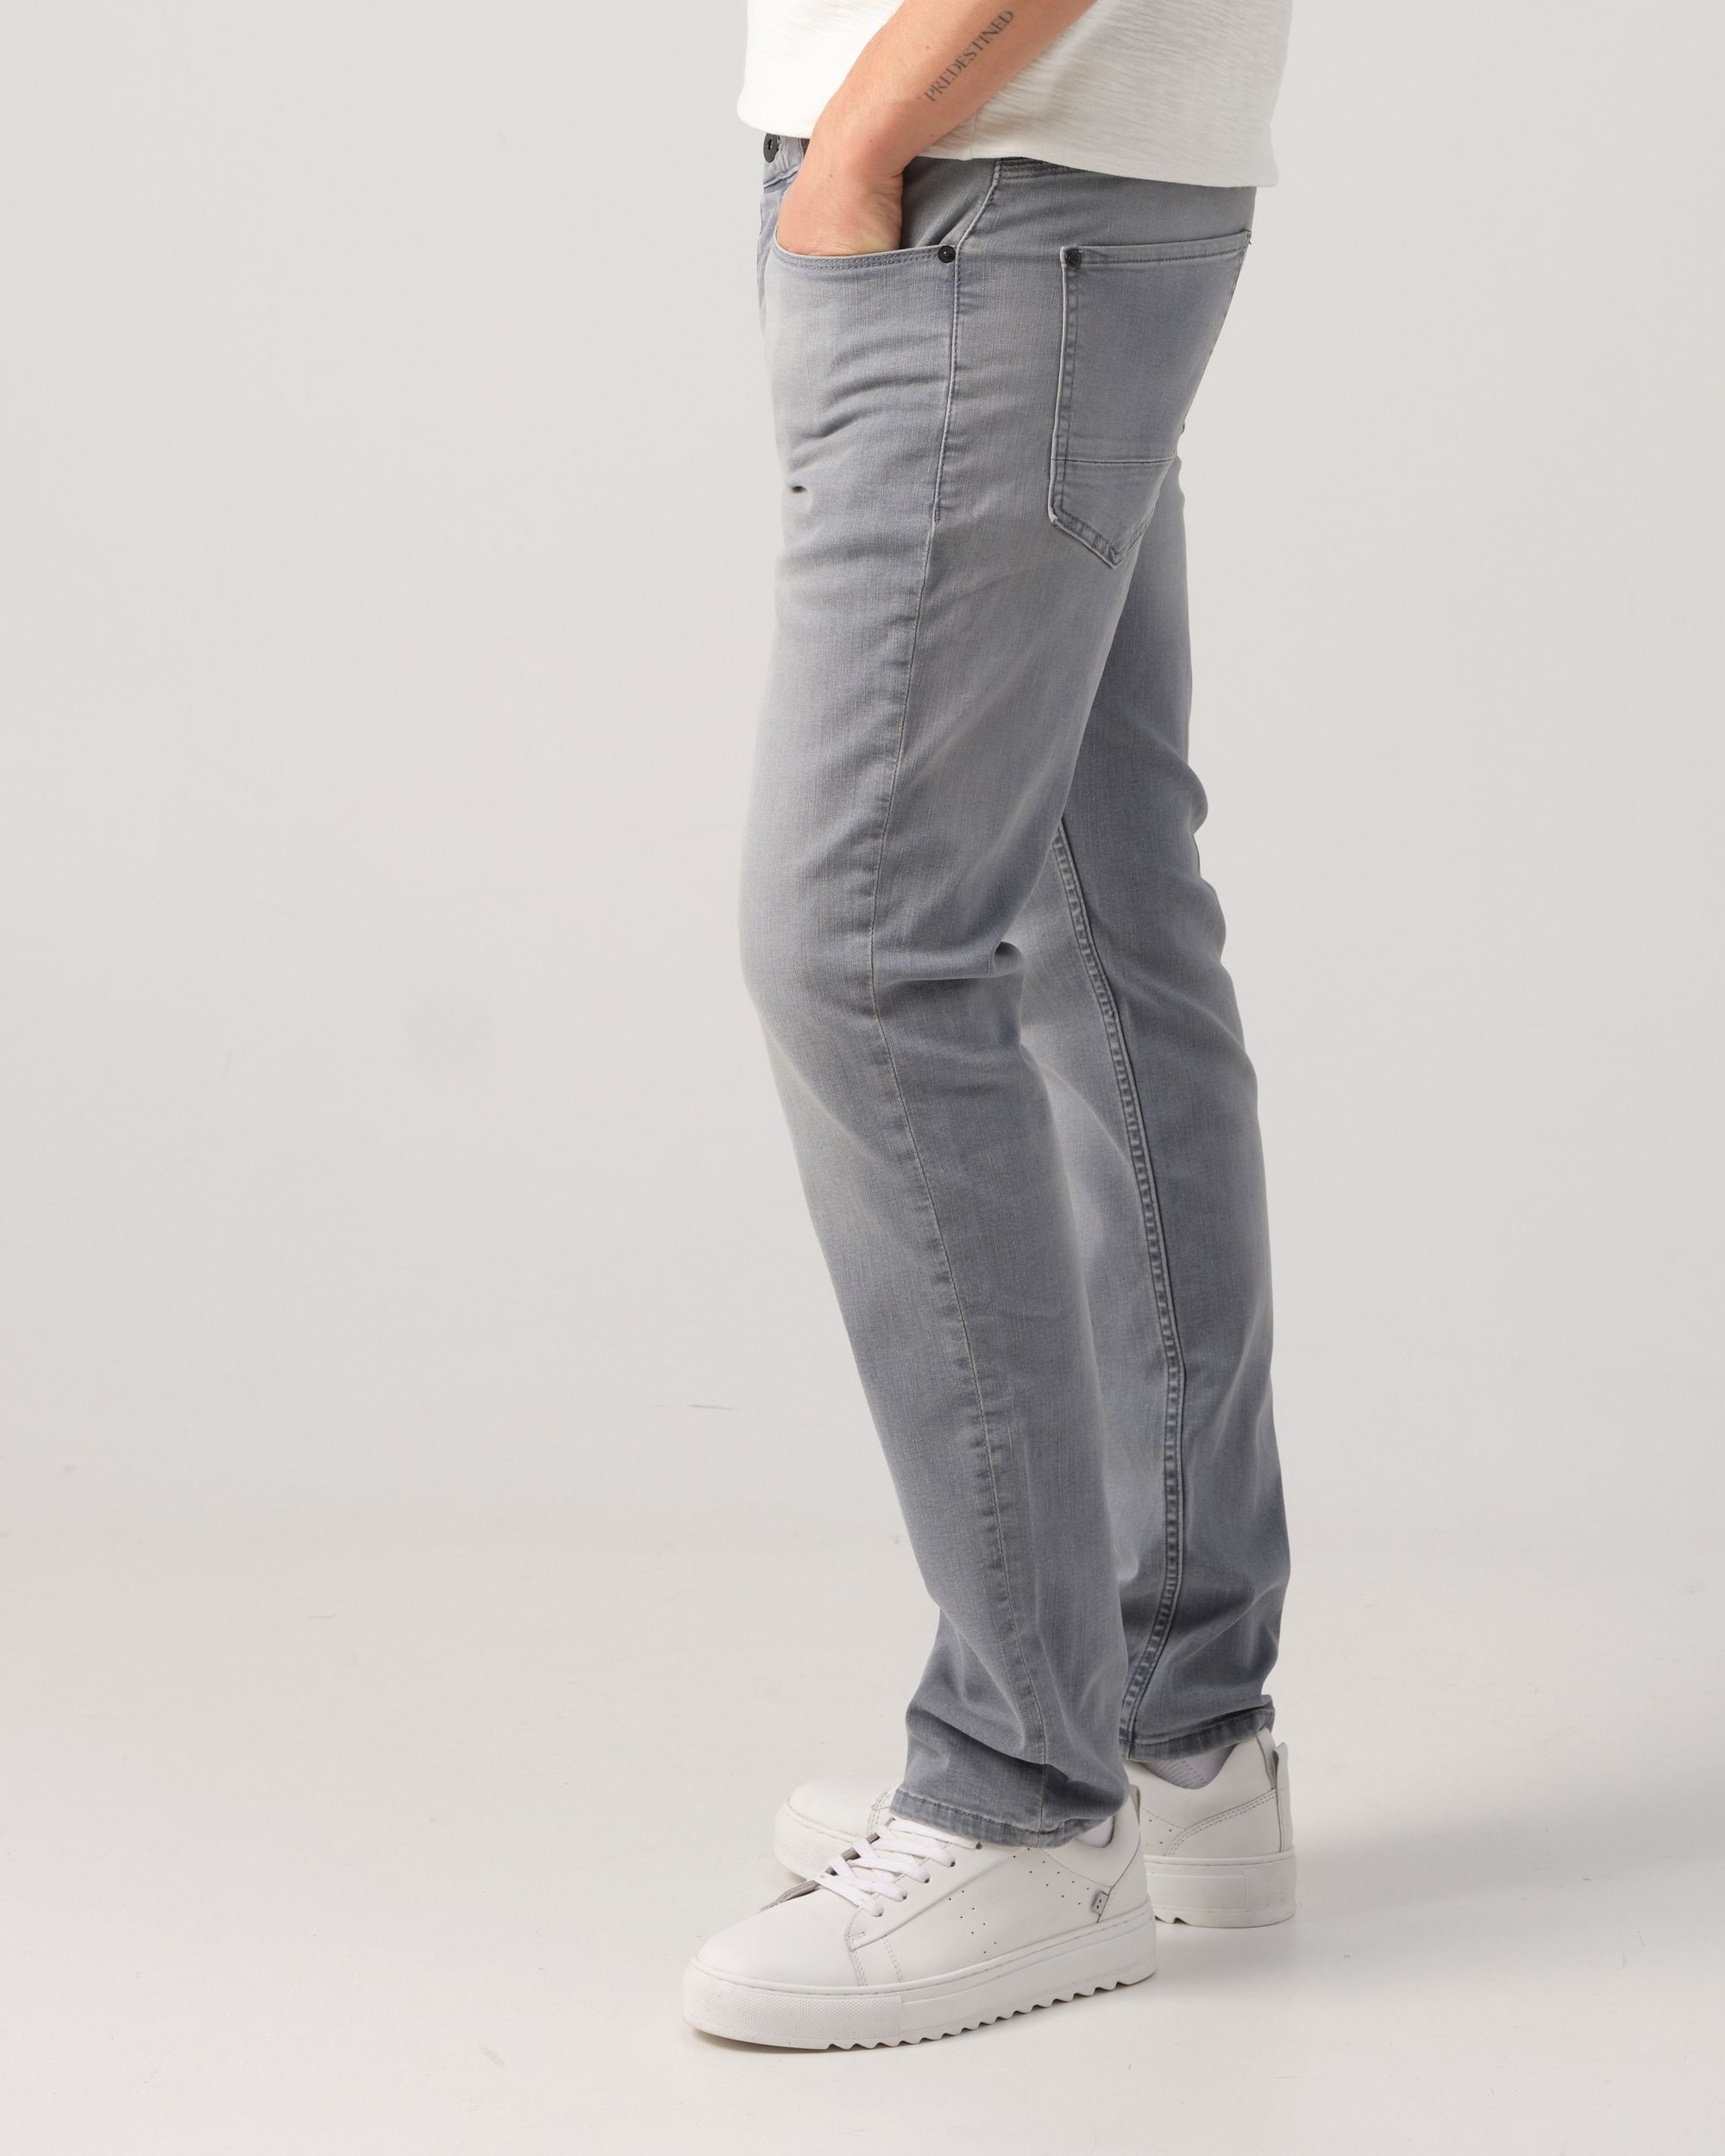 J.C. Rags Joah Blue Grey Jeans Lichtgrijs uni 086002-001-29/32